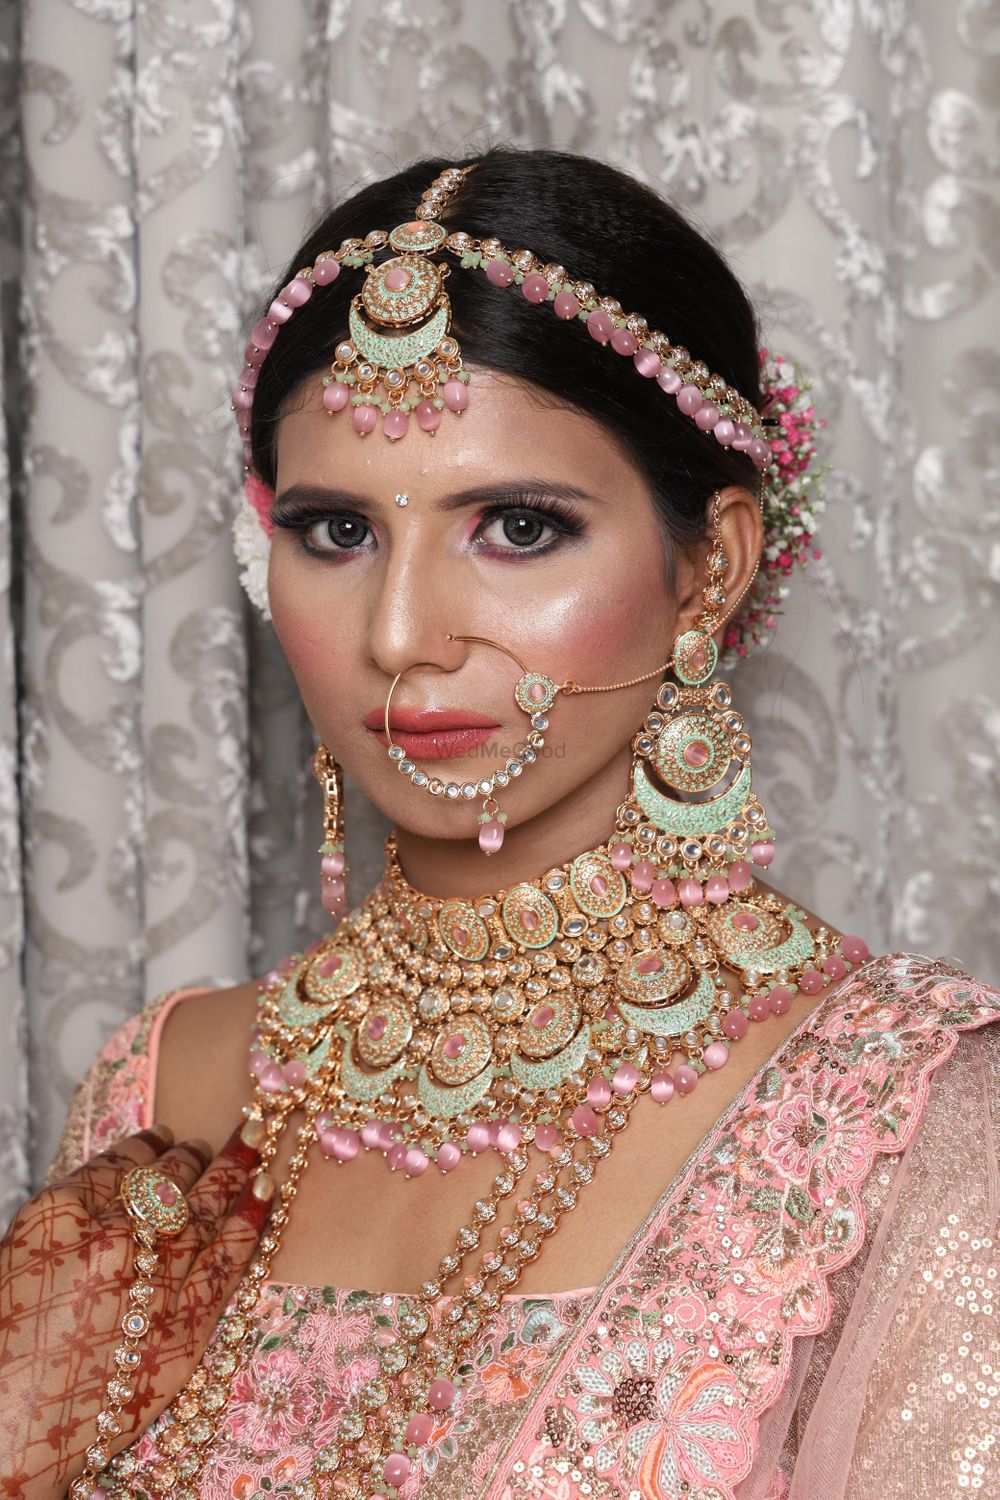 Photo From Brides - By Makeup Artist Garima Jham